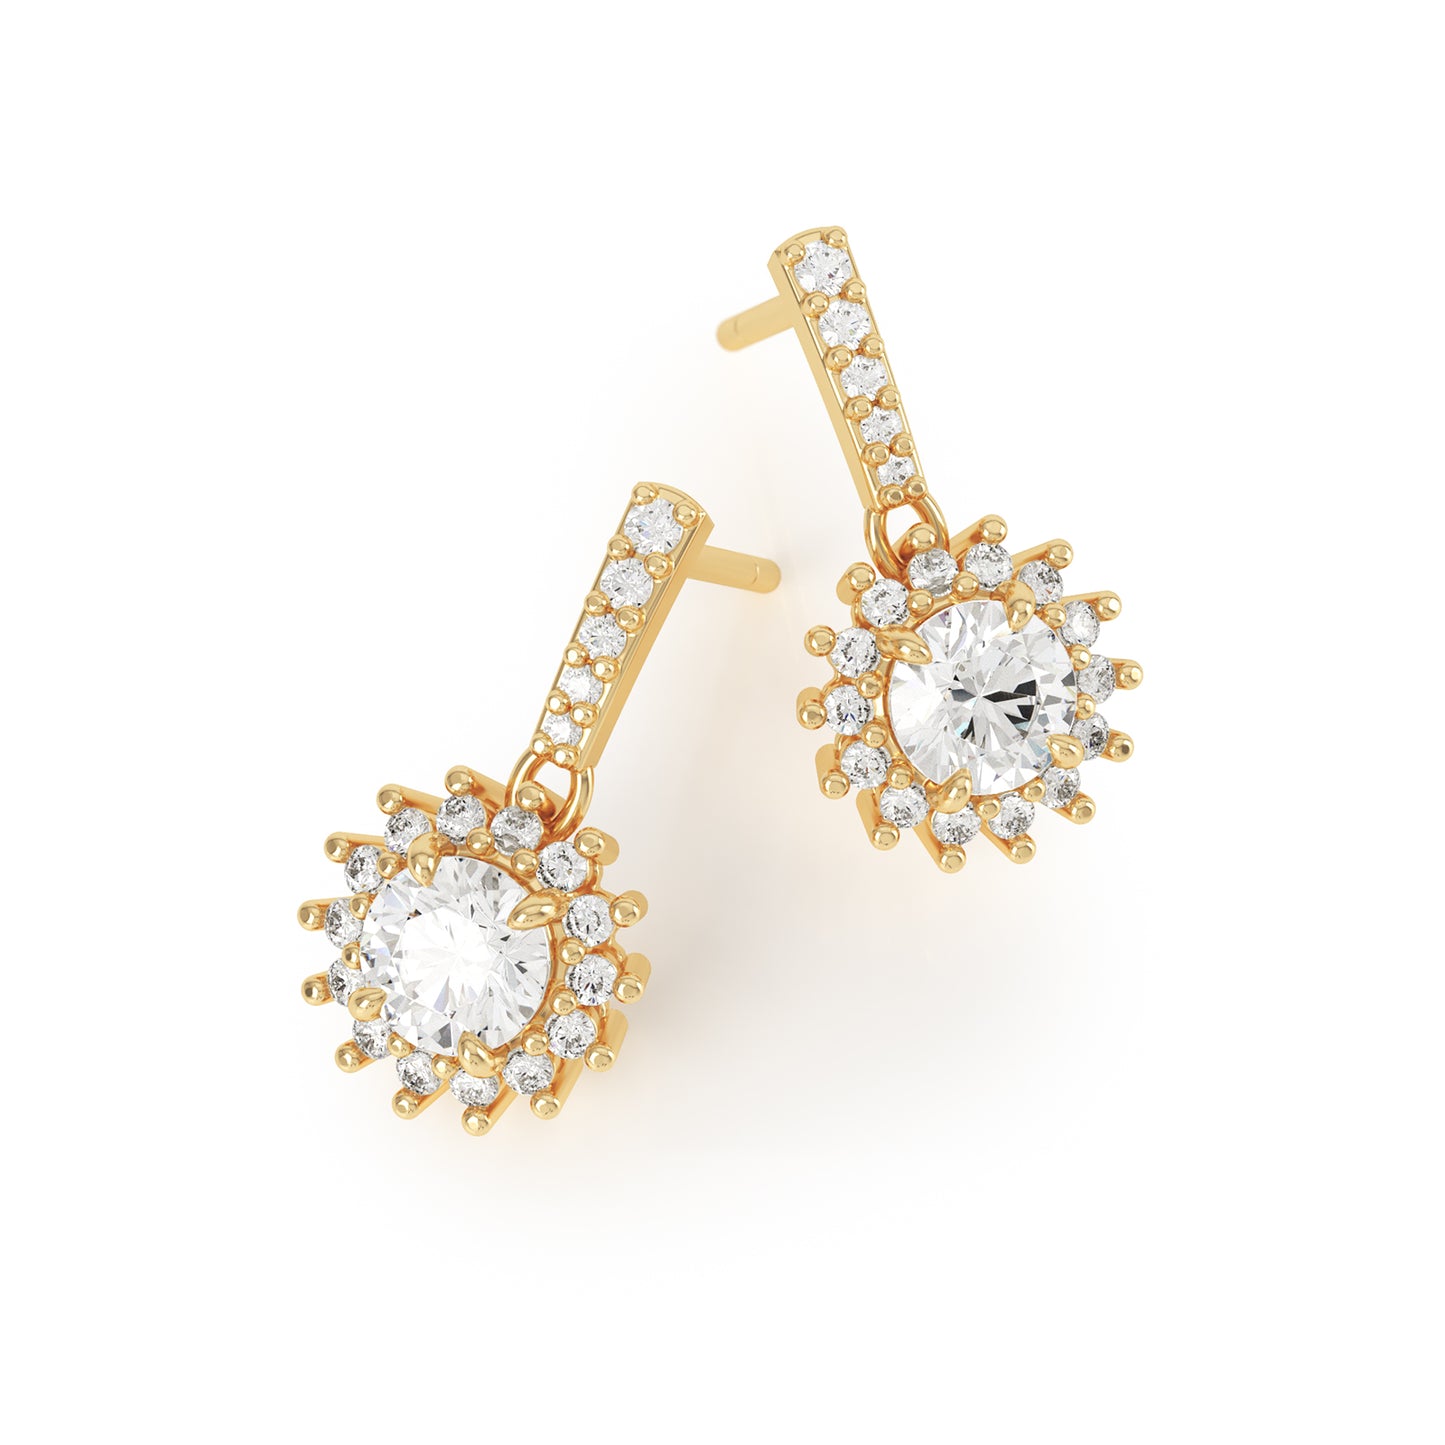 Asteri - Halo Diamond Earrings in 18k Yellow Gold